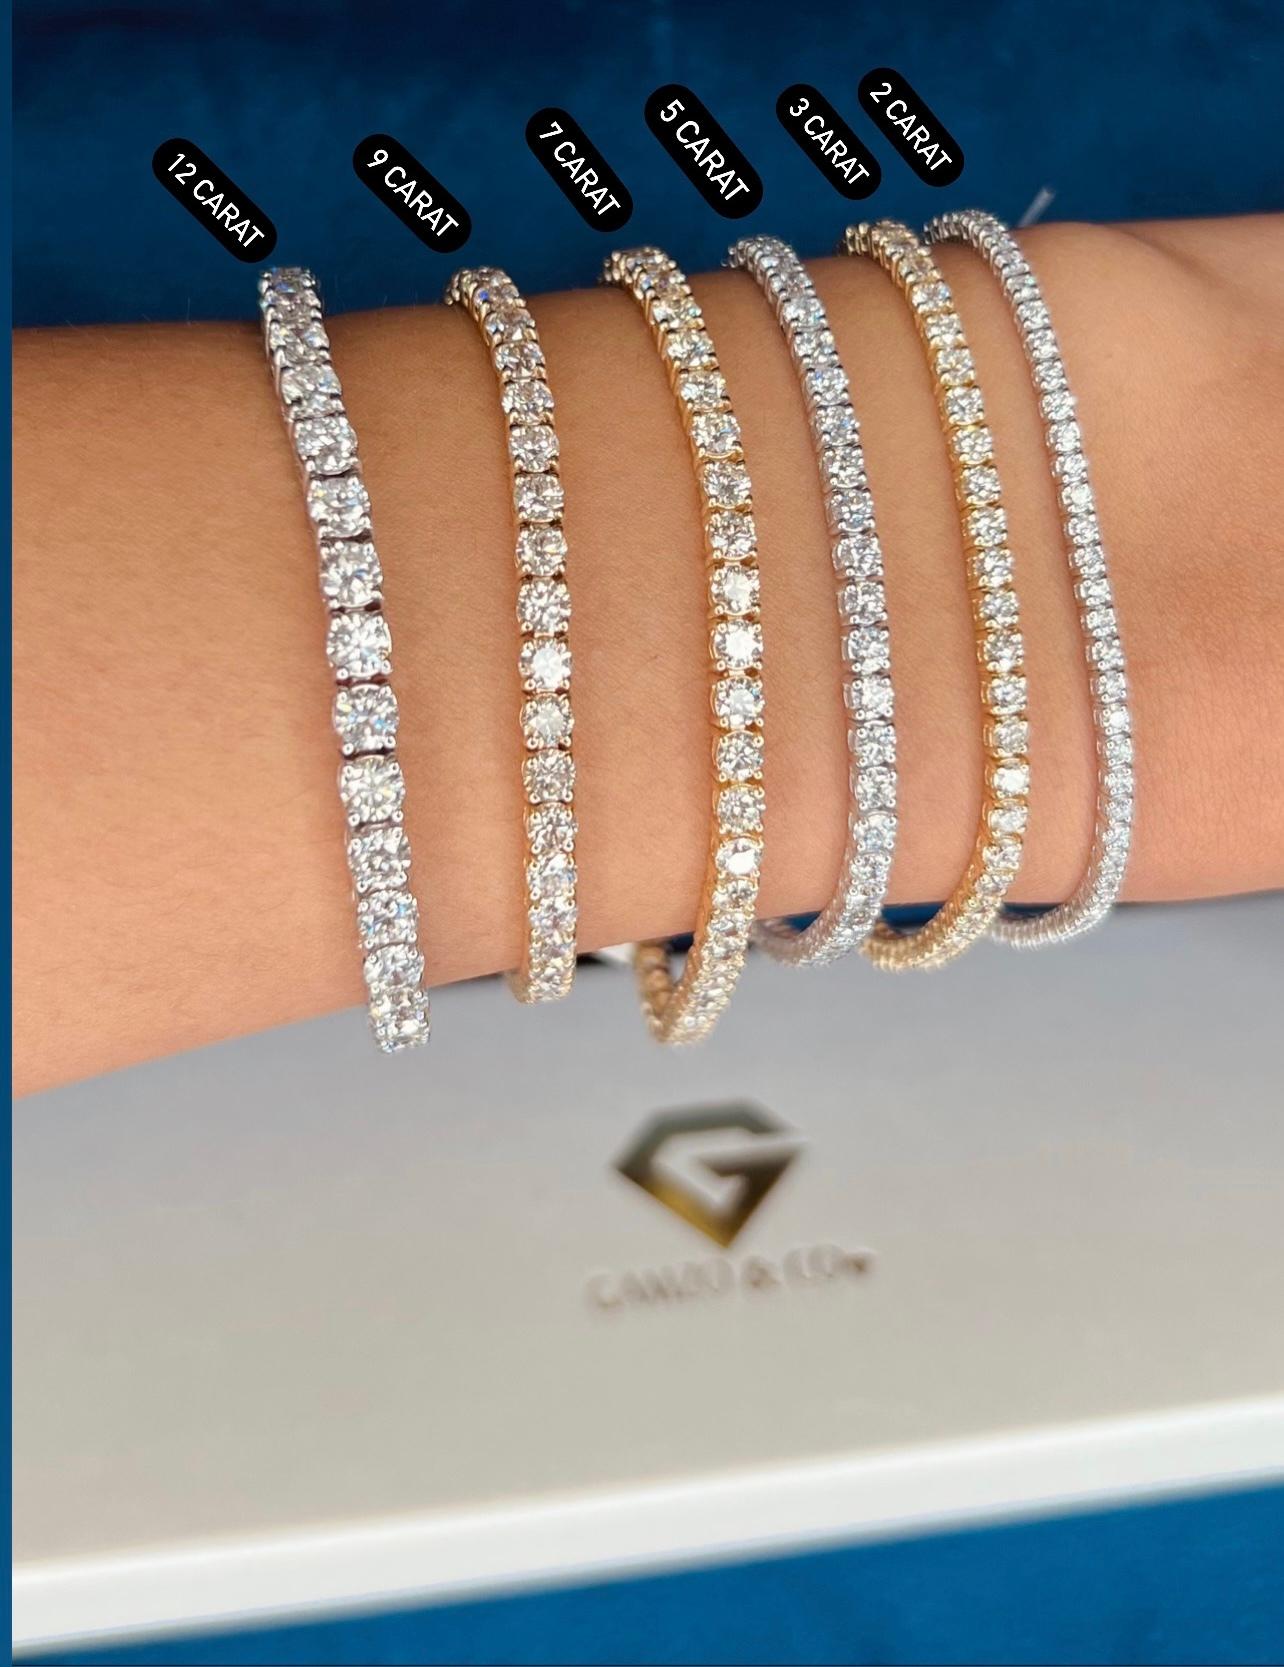 Exquisite Tennis Bracelets - Tennis Bracelets | Del Este Jewelry